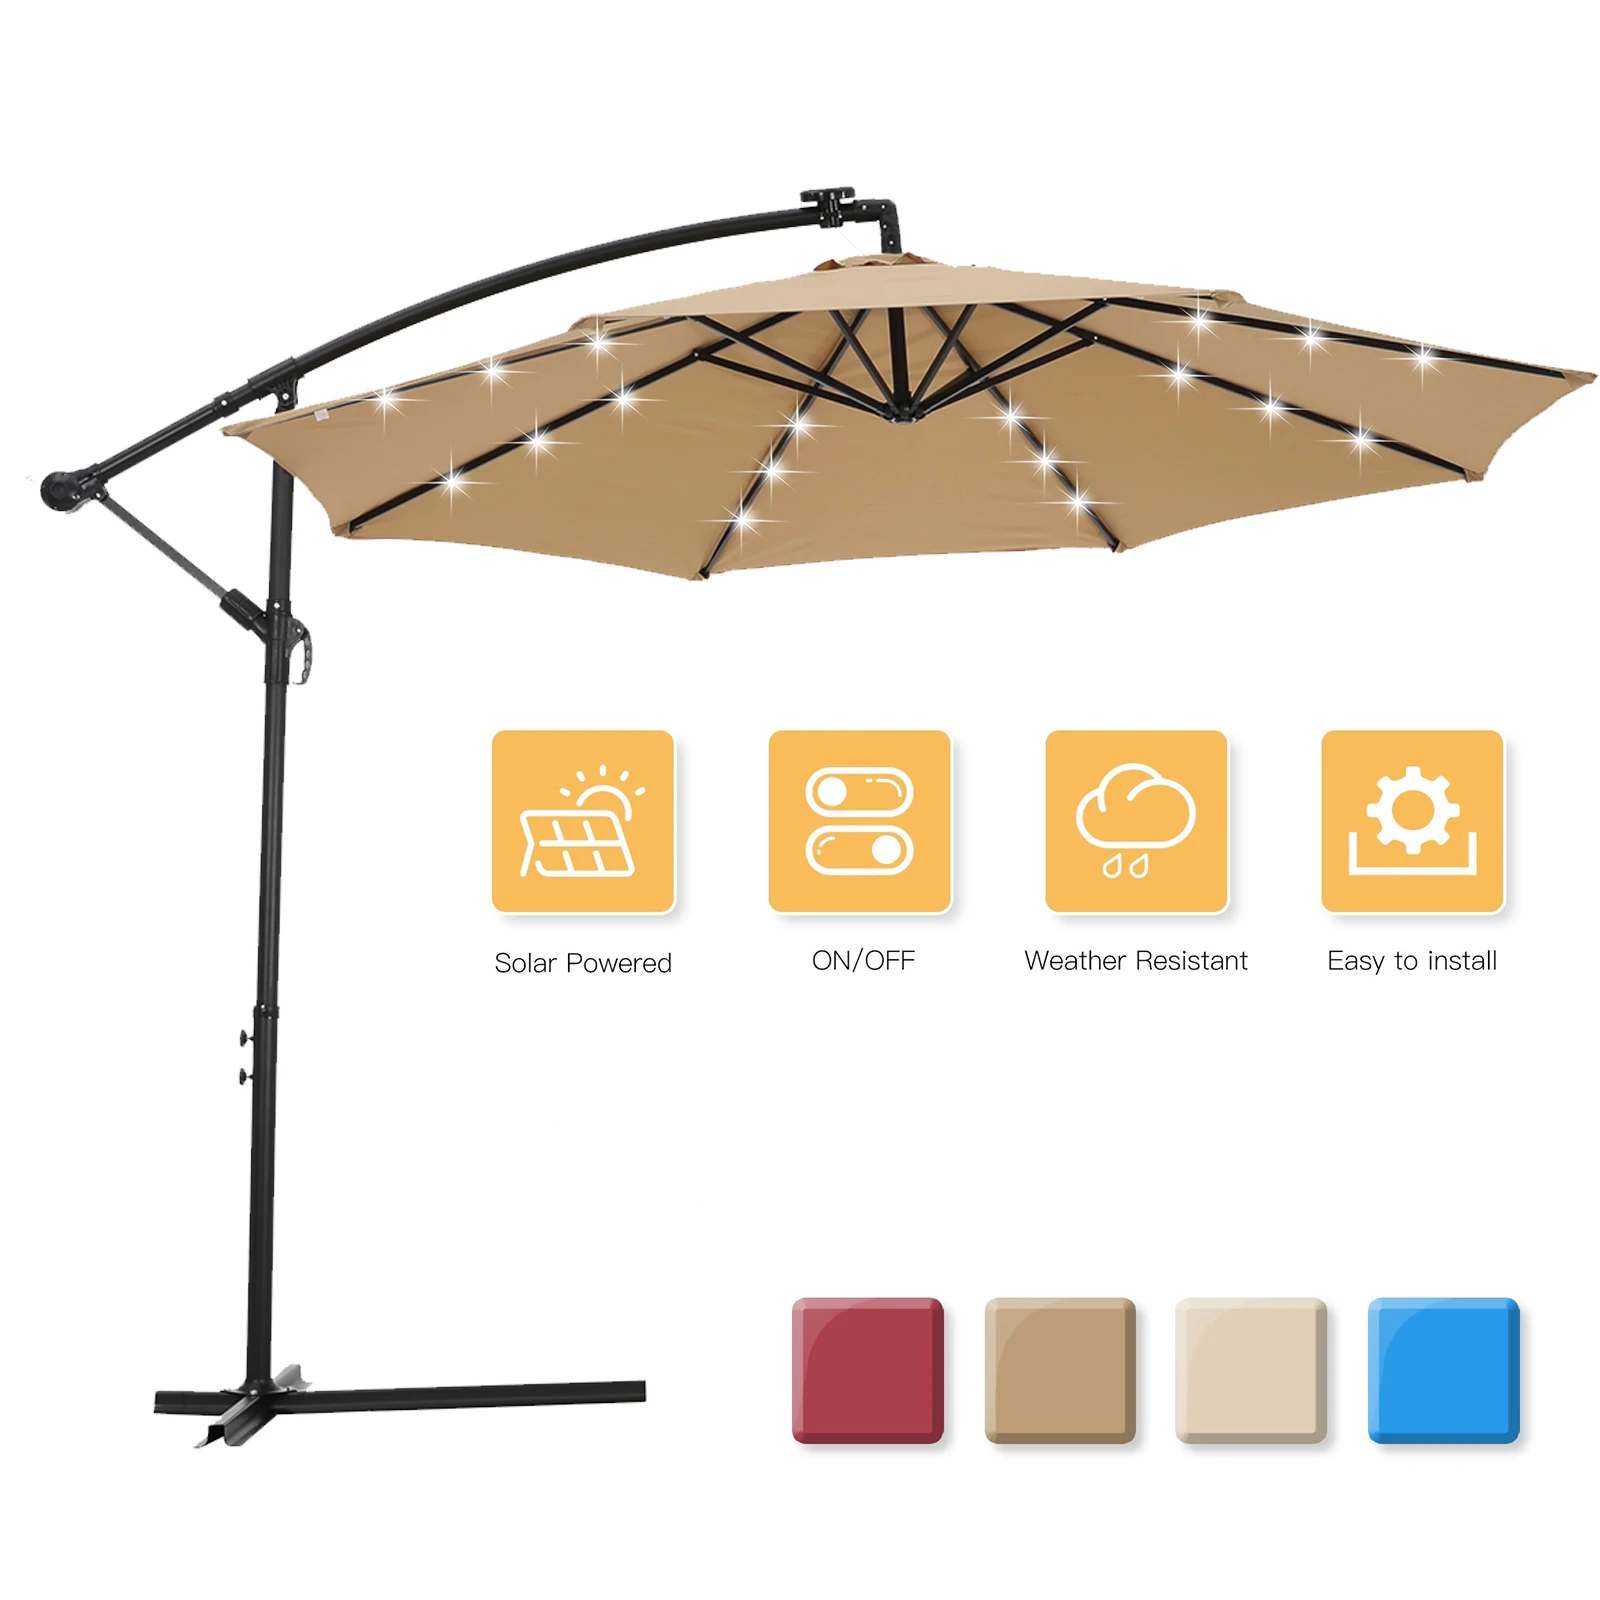 

Четыре 10 футов Солнечный светодиодный Открытый Патио зонт висит зонтик офсетная печать зонт легко открыть Adustment с 24 светодиодный свет